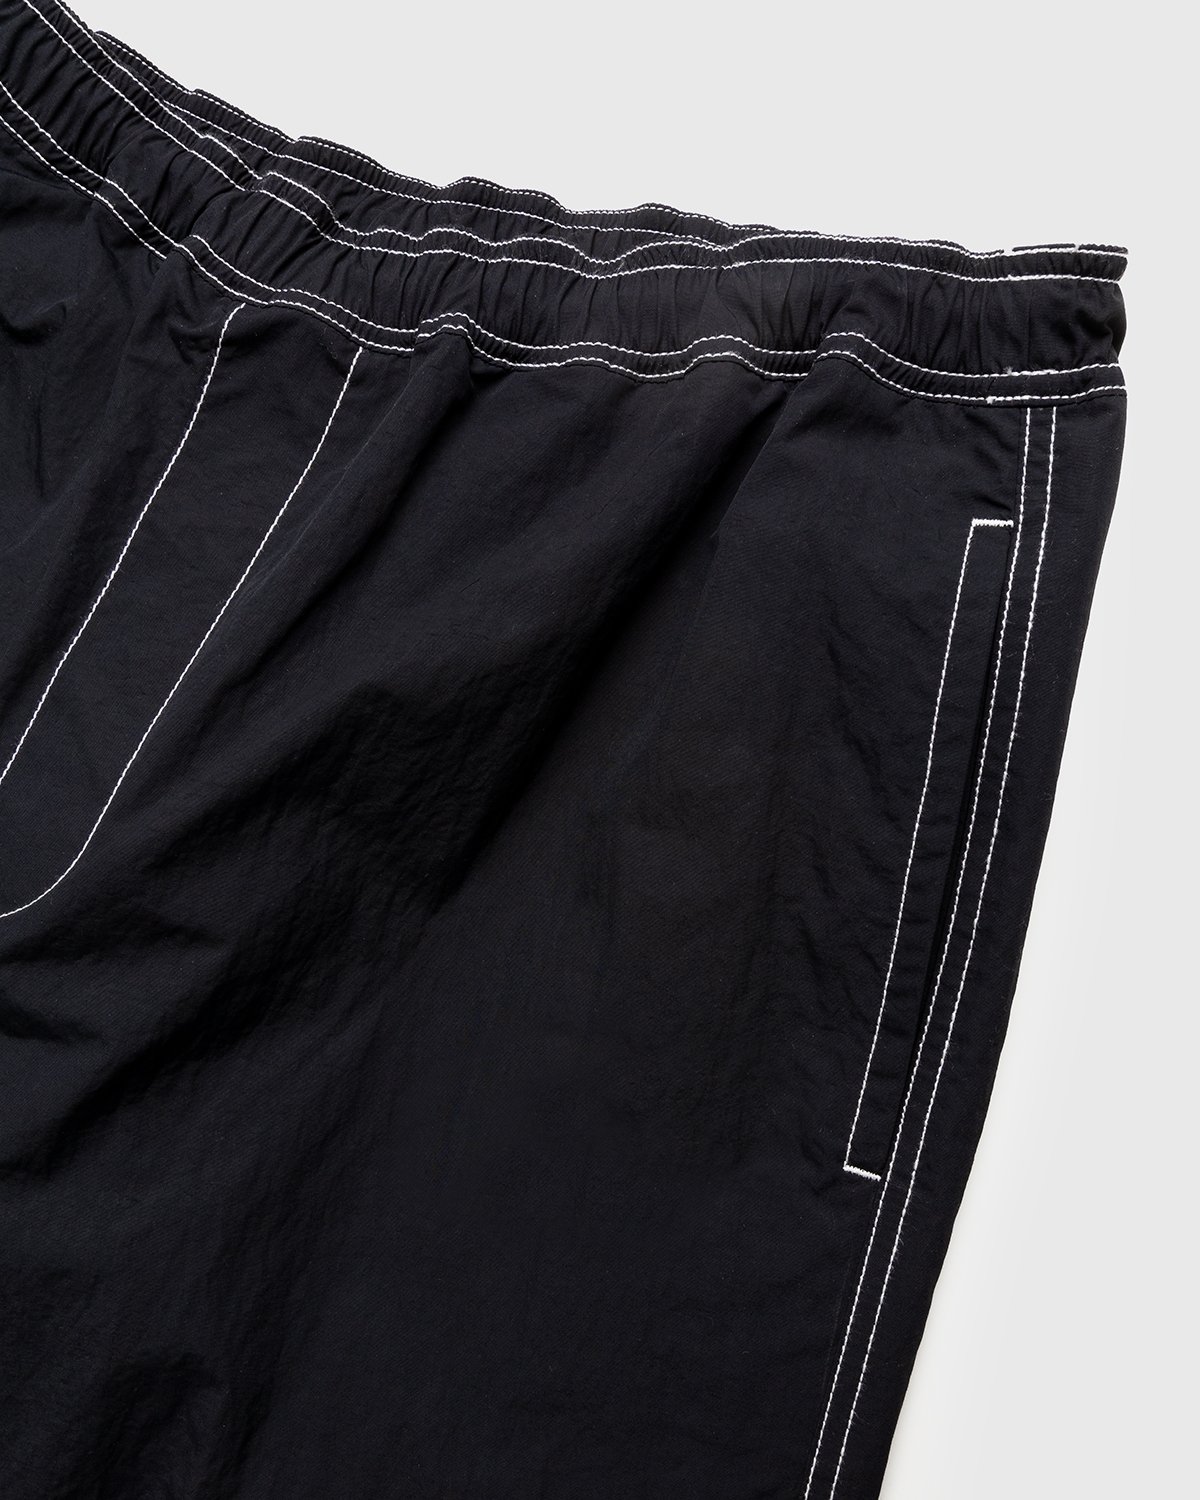 Highsnobiety - Contrast Brushed Nylon Elastic Pants Black - Clothing - Black - Image 4